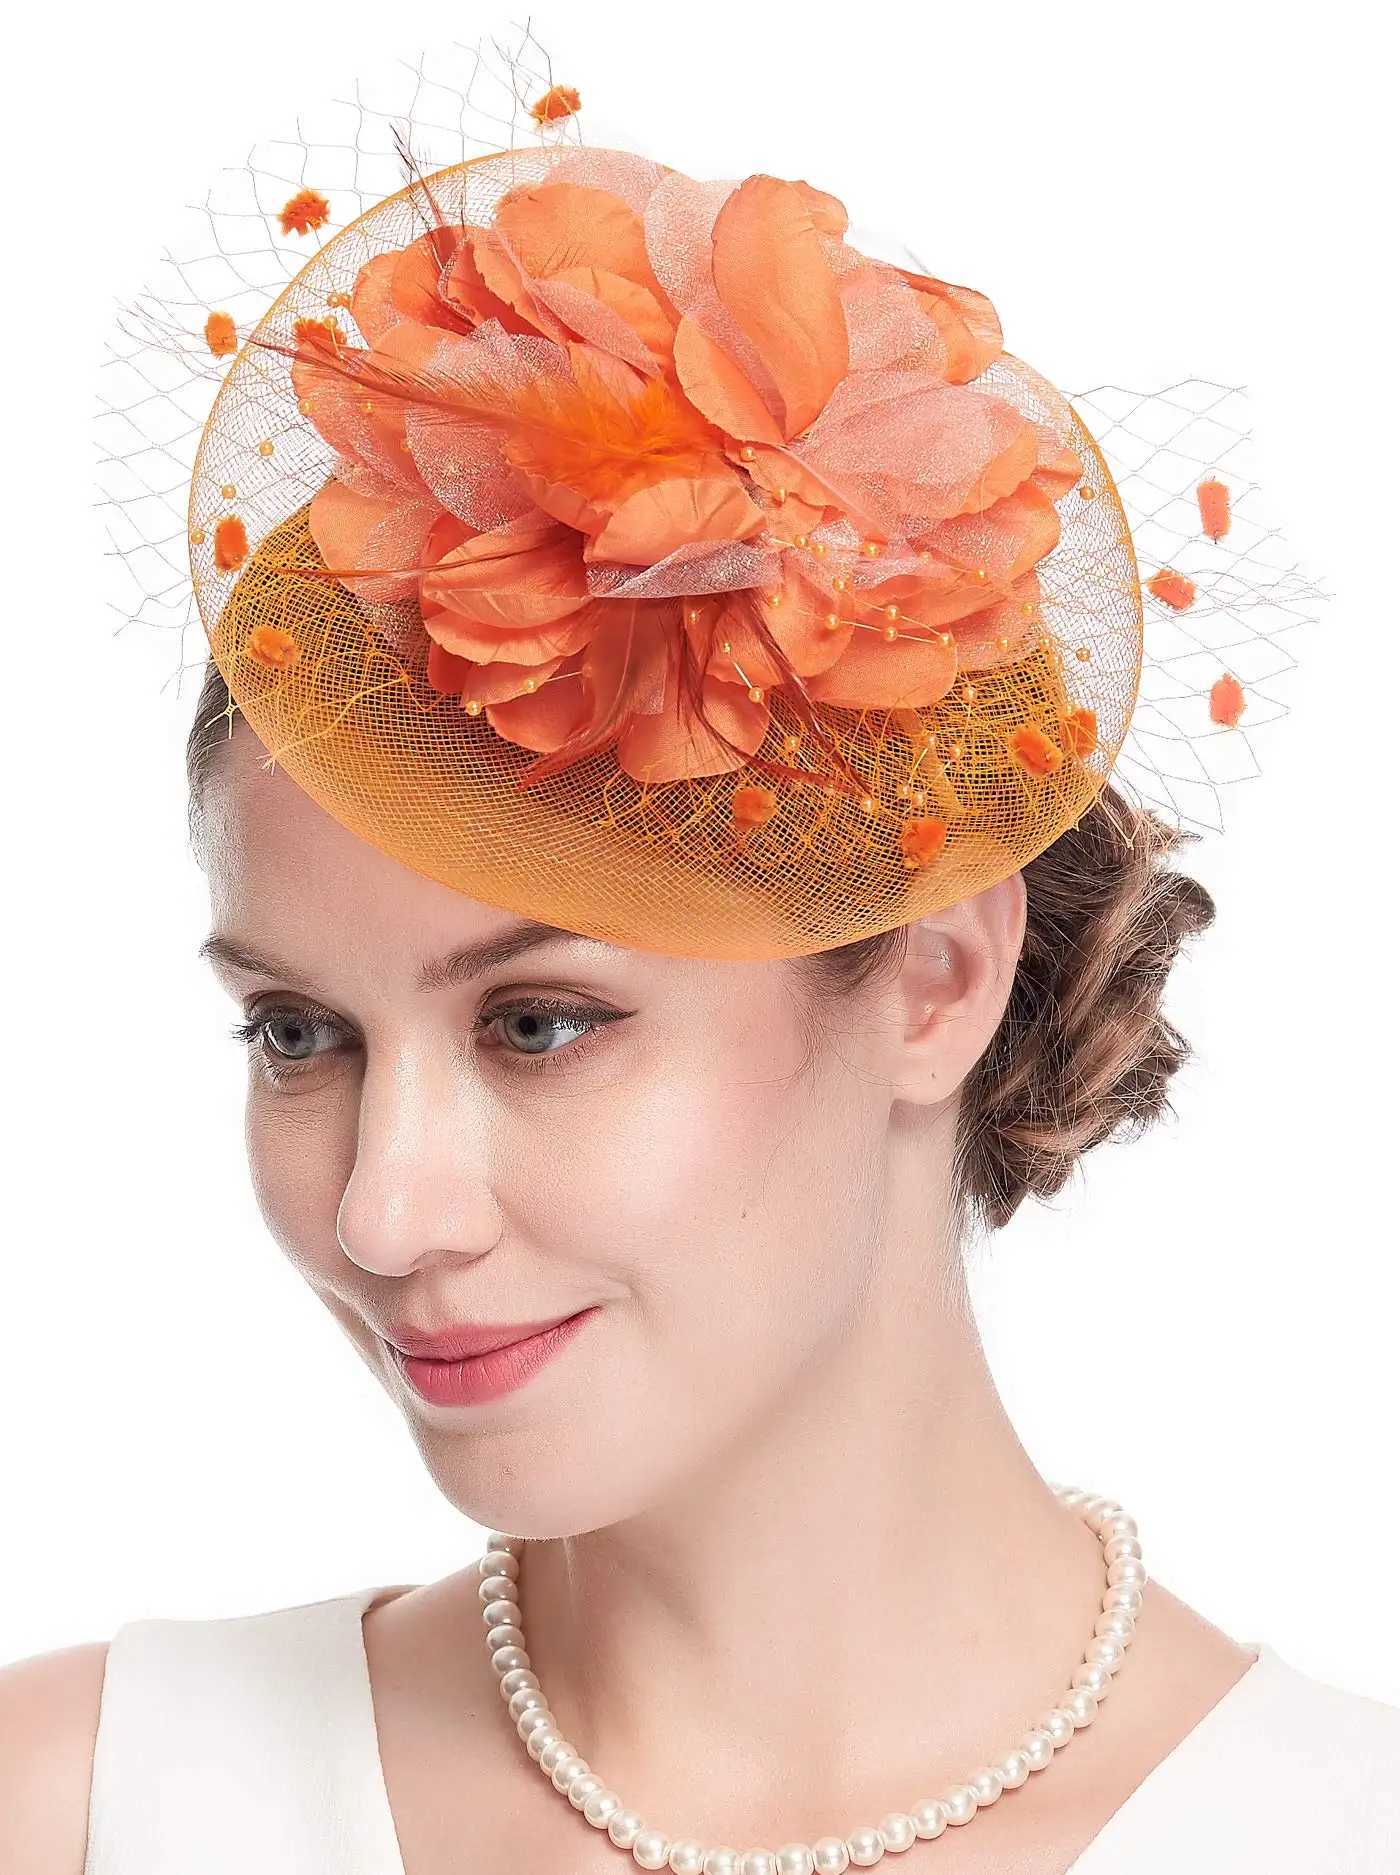 Szerokie grzbiet kapelusze wiadra kapelusze brytyjska retro fascynator nakrycia koktajl koktajl makijaż makijaż kwiat makijaż sesja zdjęciowa fotografia